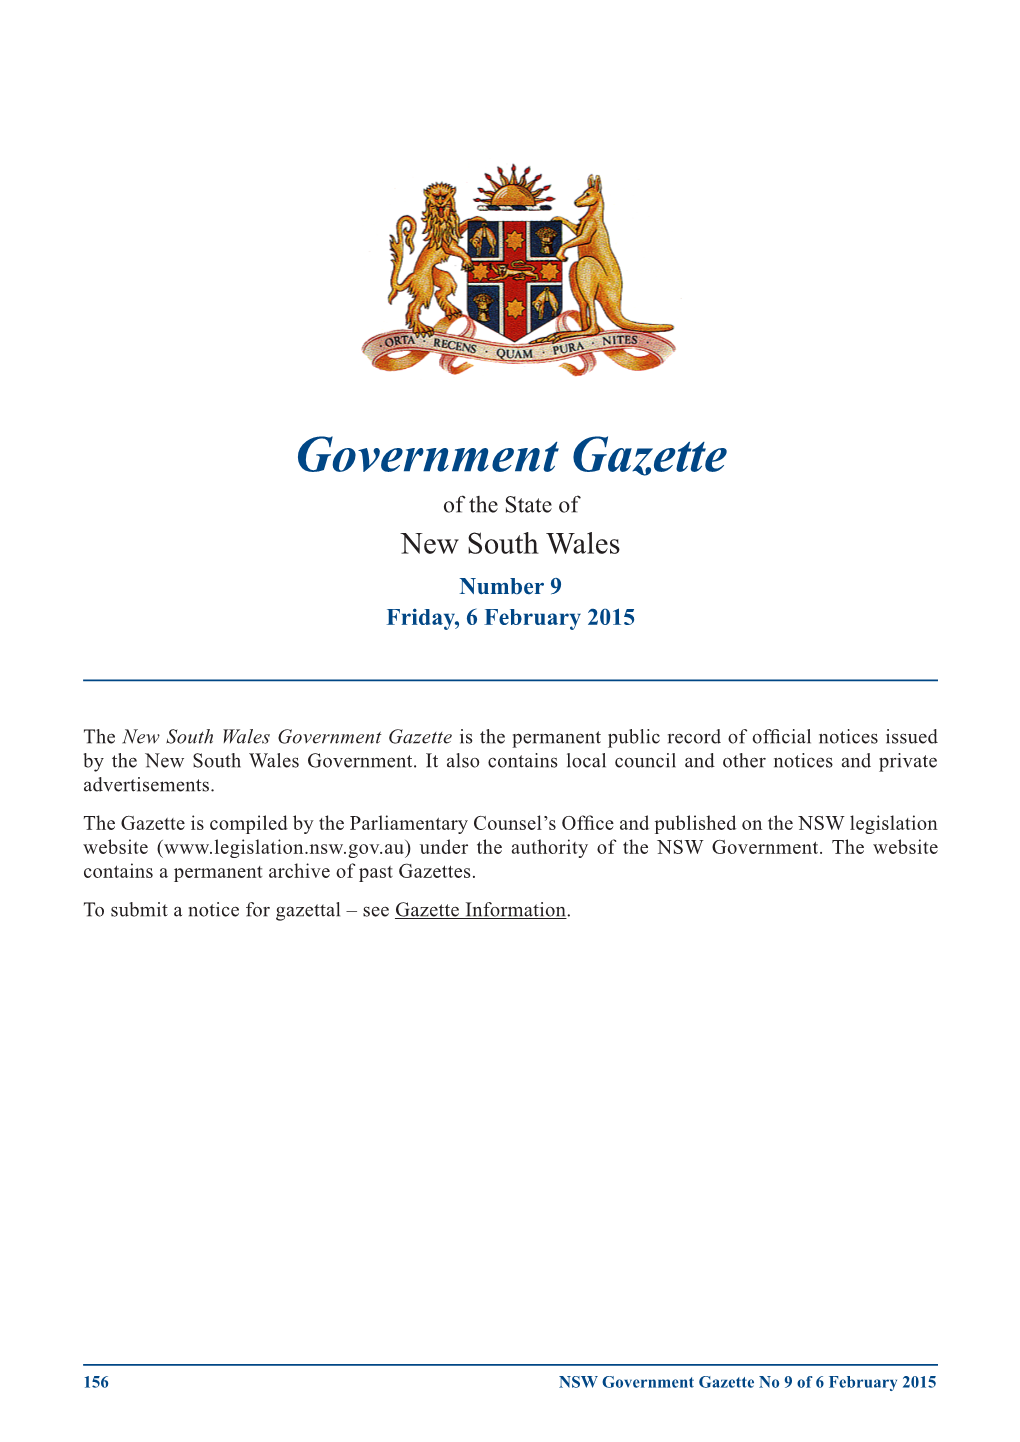 Government Gazette of 6 February 2015